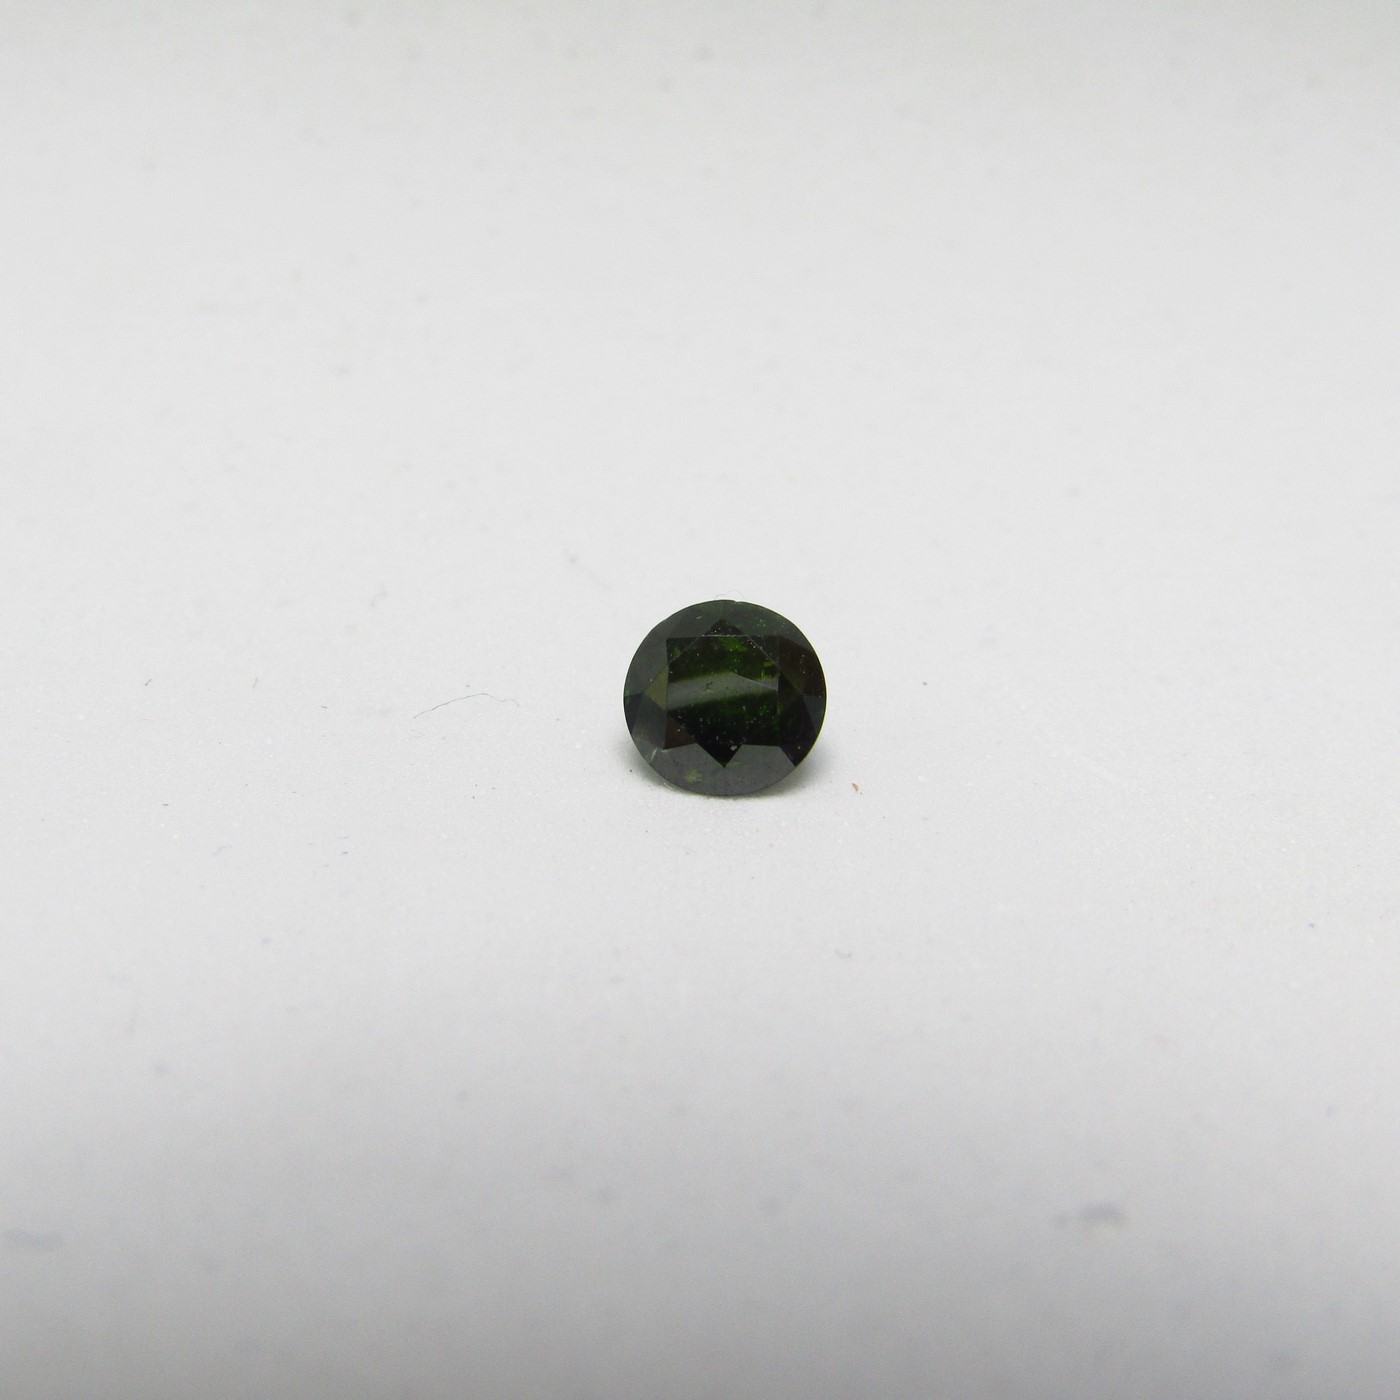 Diamante Natural de 0,50 ct. Talla: Brillante. Color: Intense Leaf Green. Pureza: P3. Mejorado. Certificado IGR.